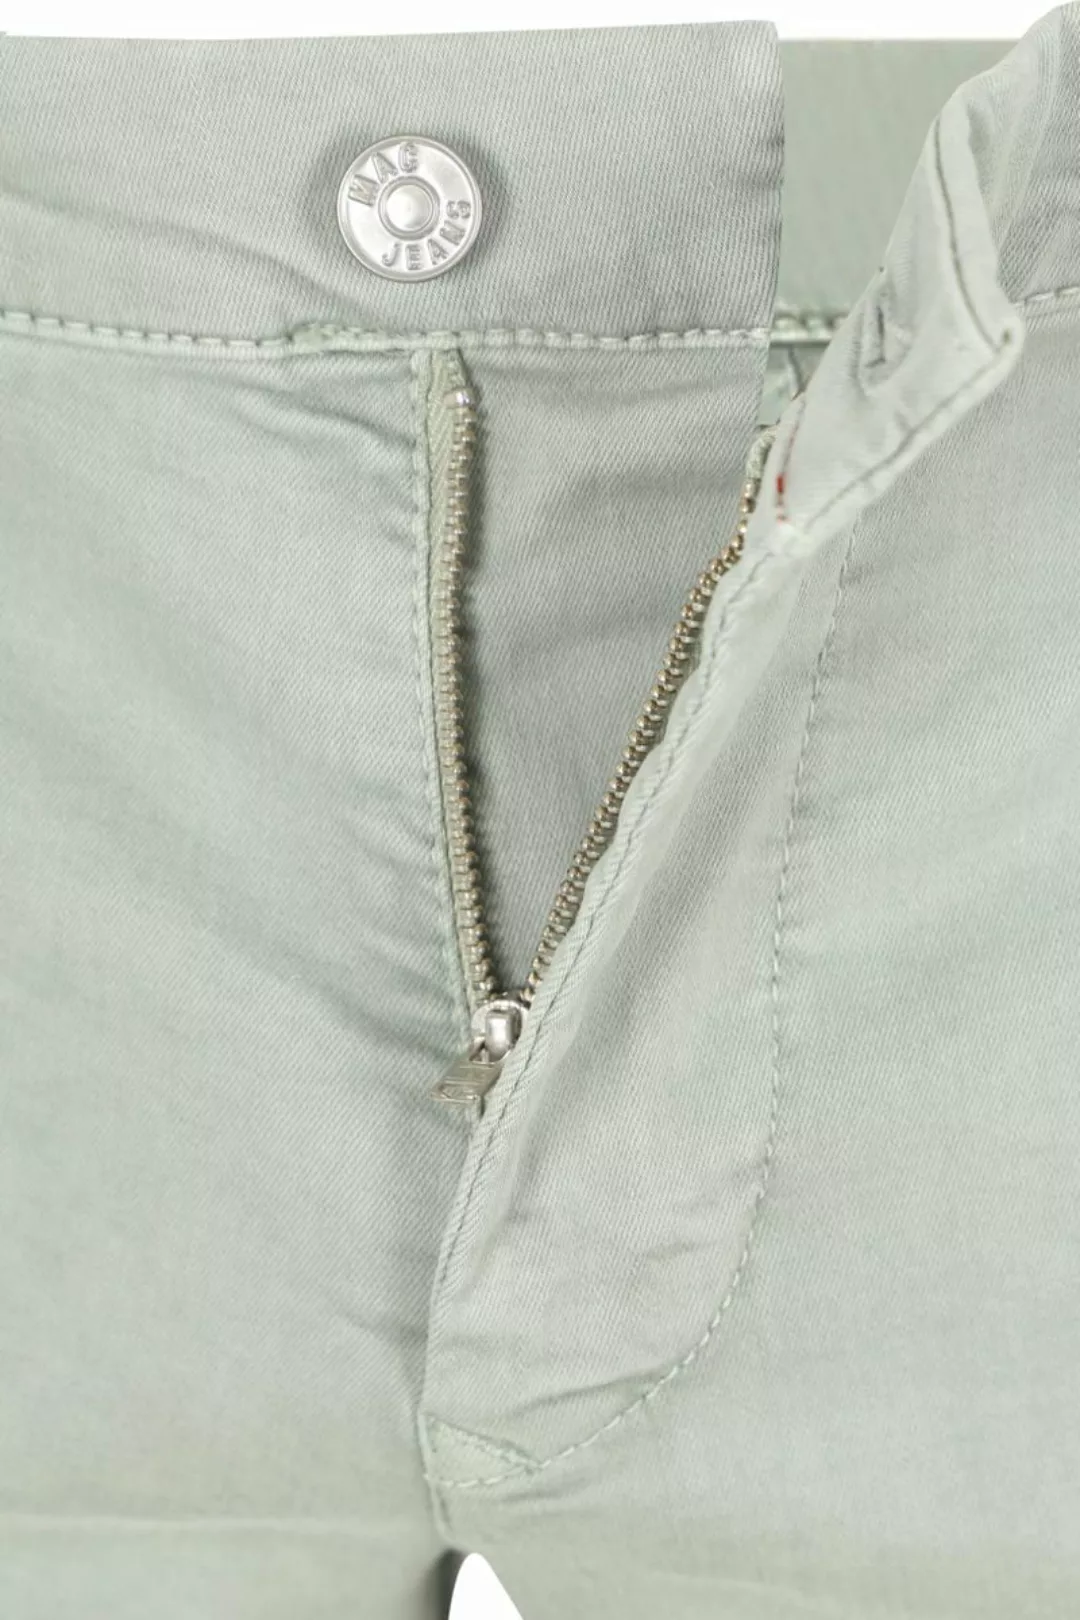 Mac Jeans Driver Pants Hellgrün - Größe W 33 - L 34 günstig online kaufen